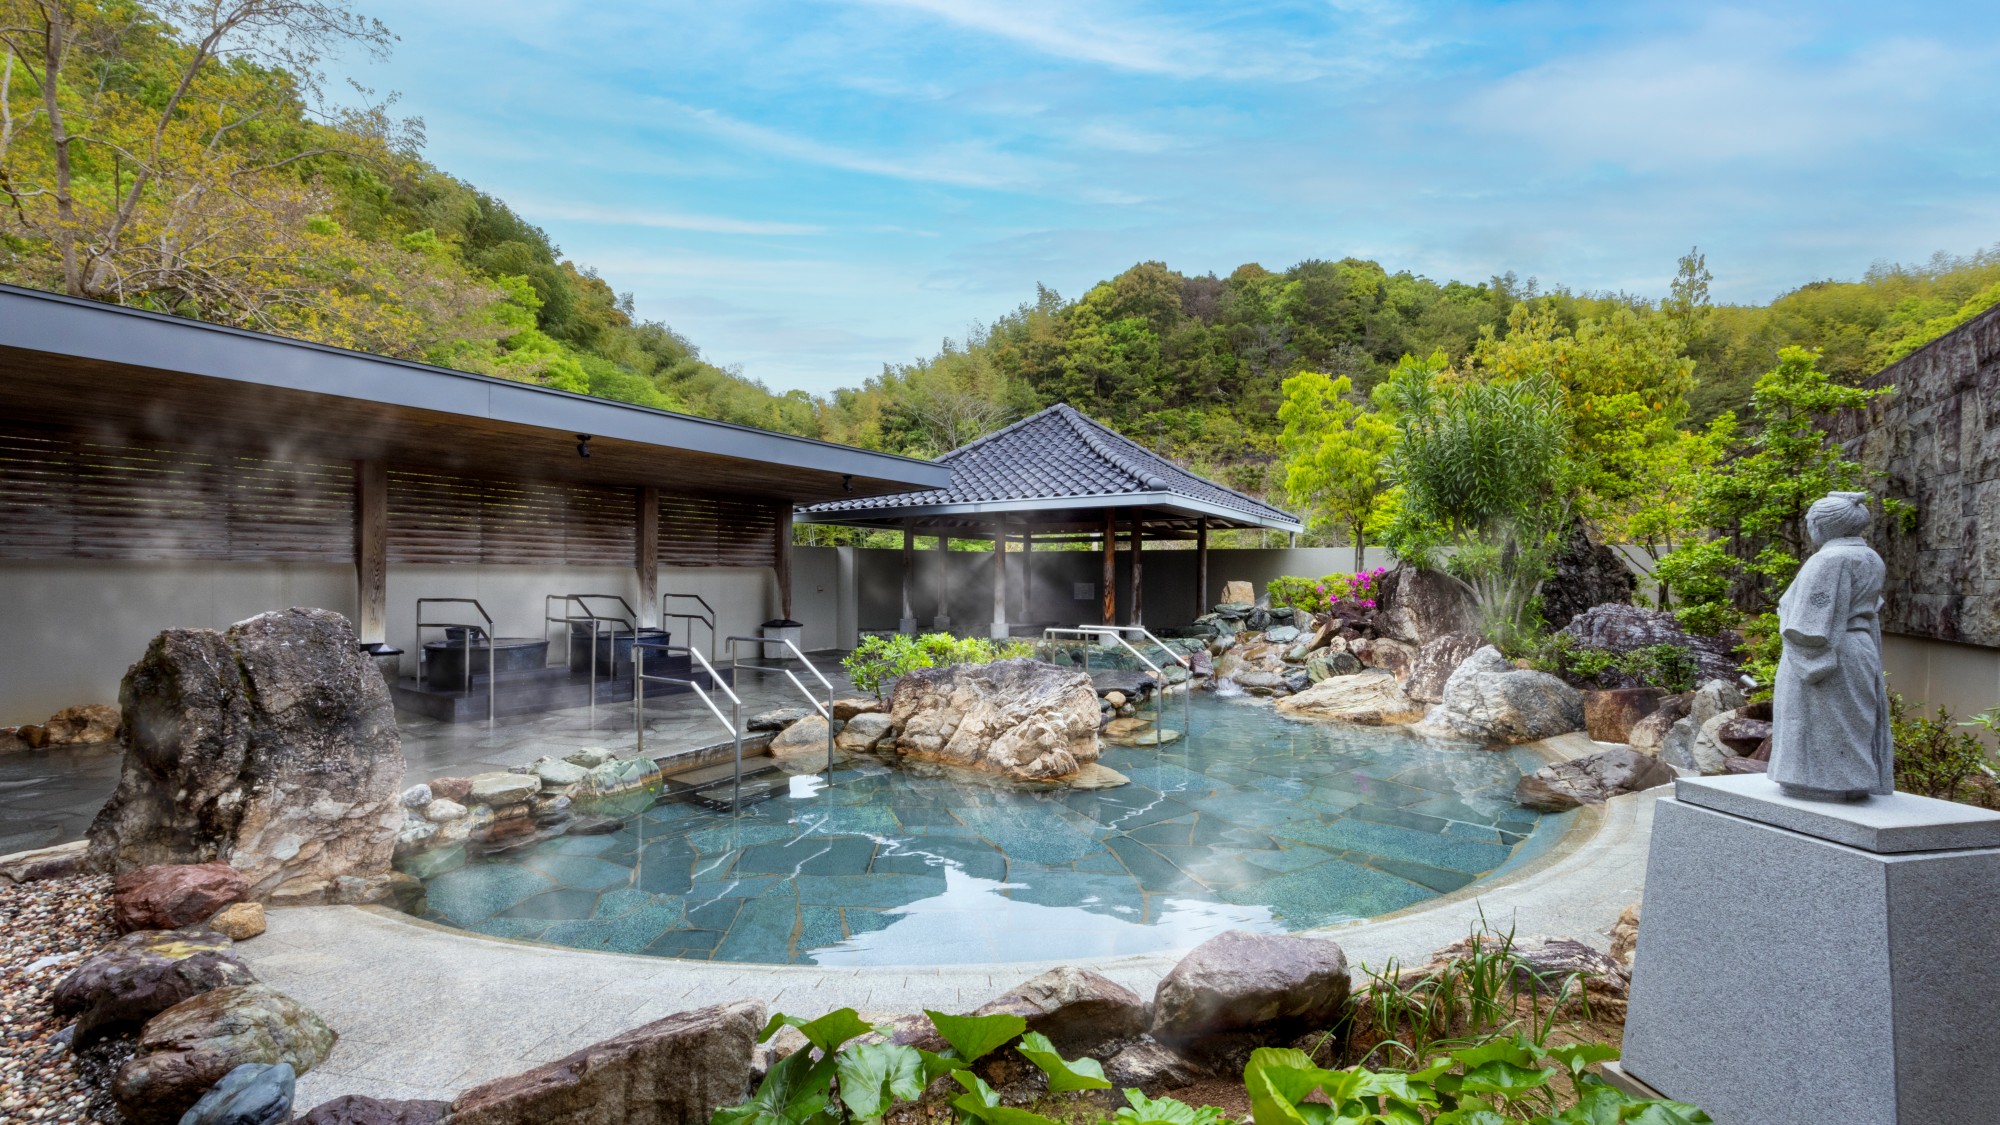 ホテルには2つのタイプの露天風呂「桂浜」と「室戸岬」があります。（写真は桂浜）